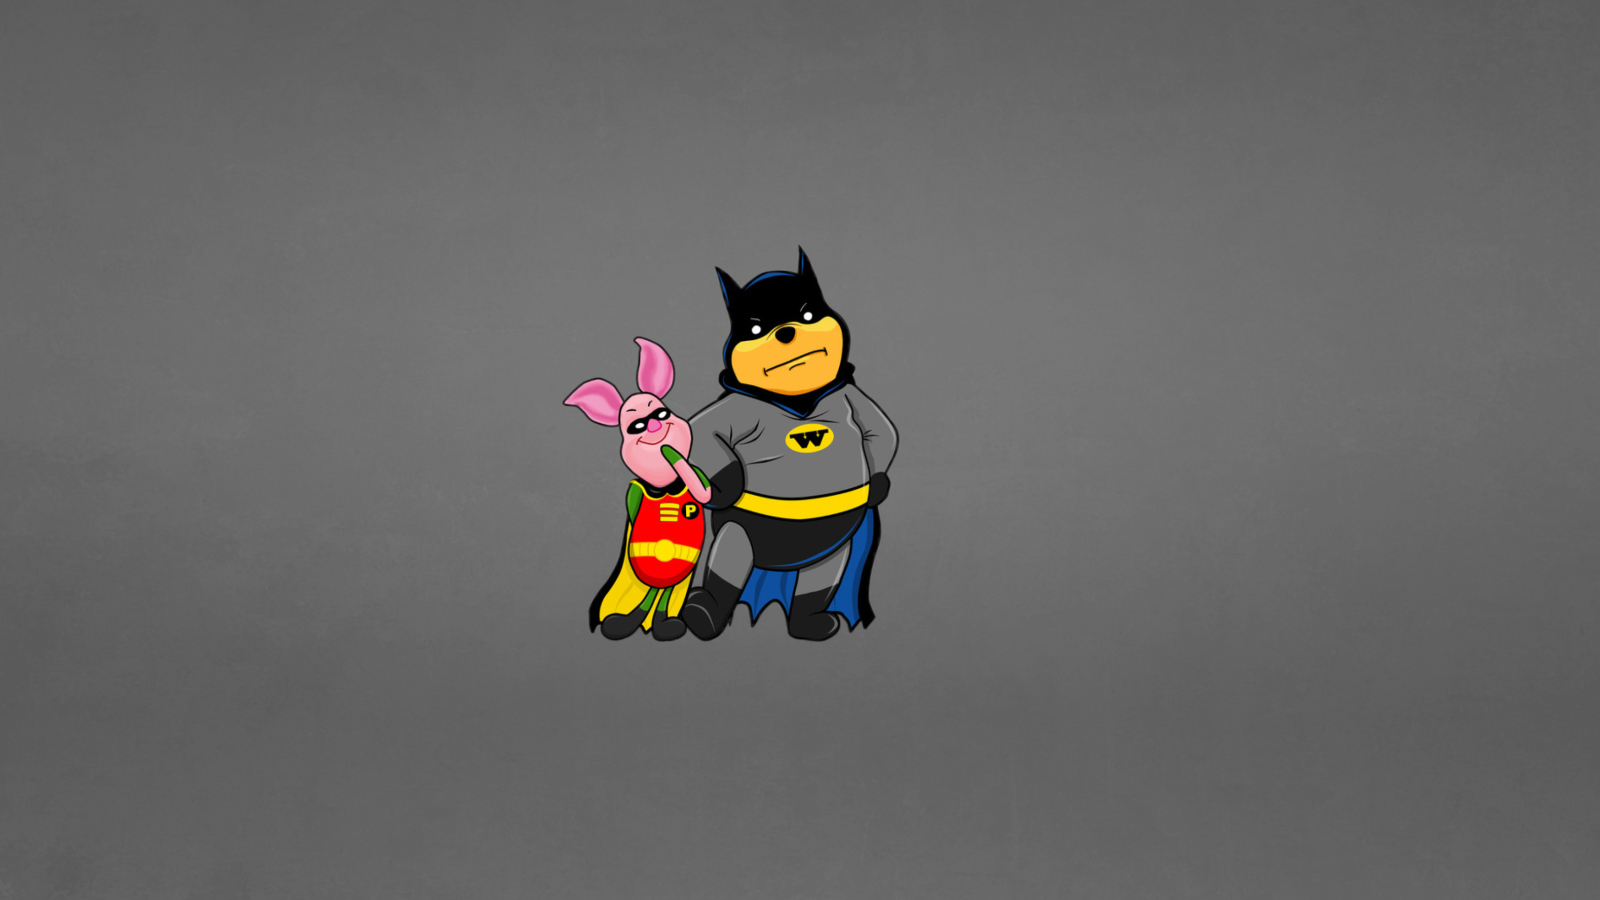 Обои Batman And Robin 1600x900